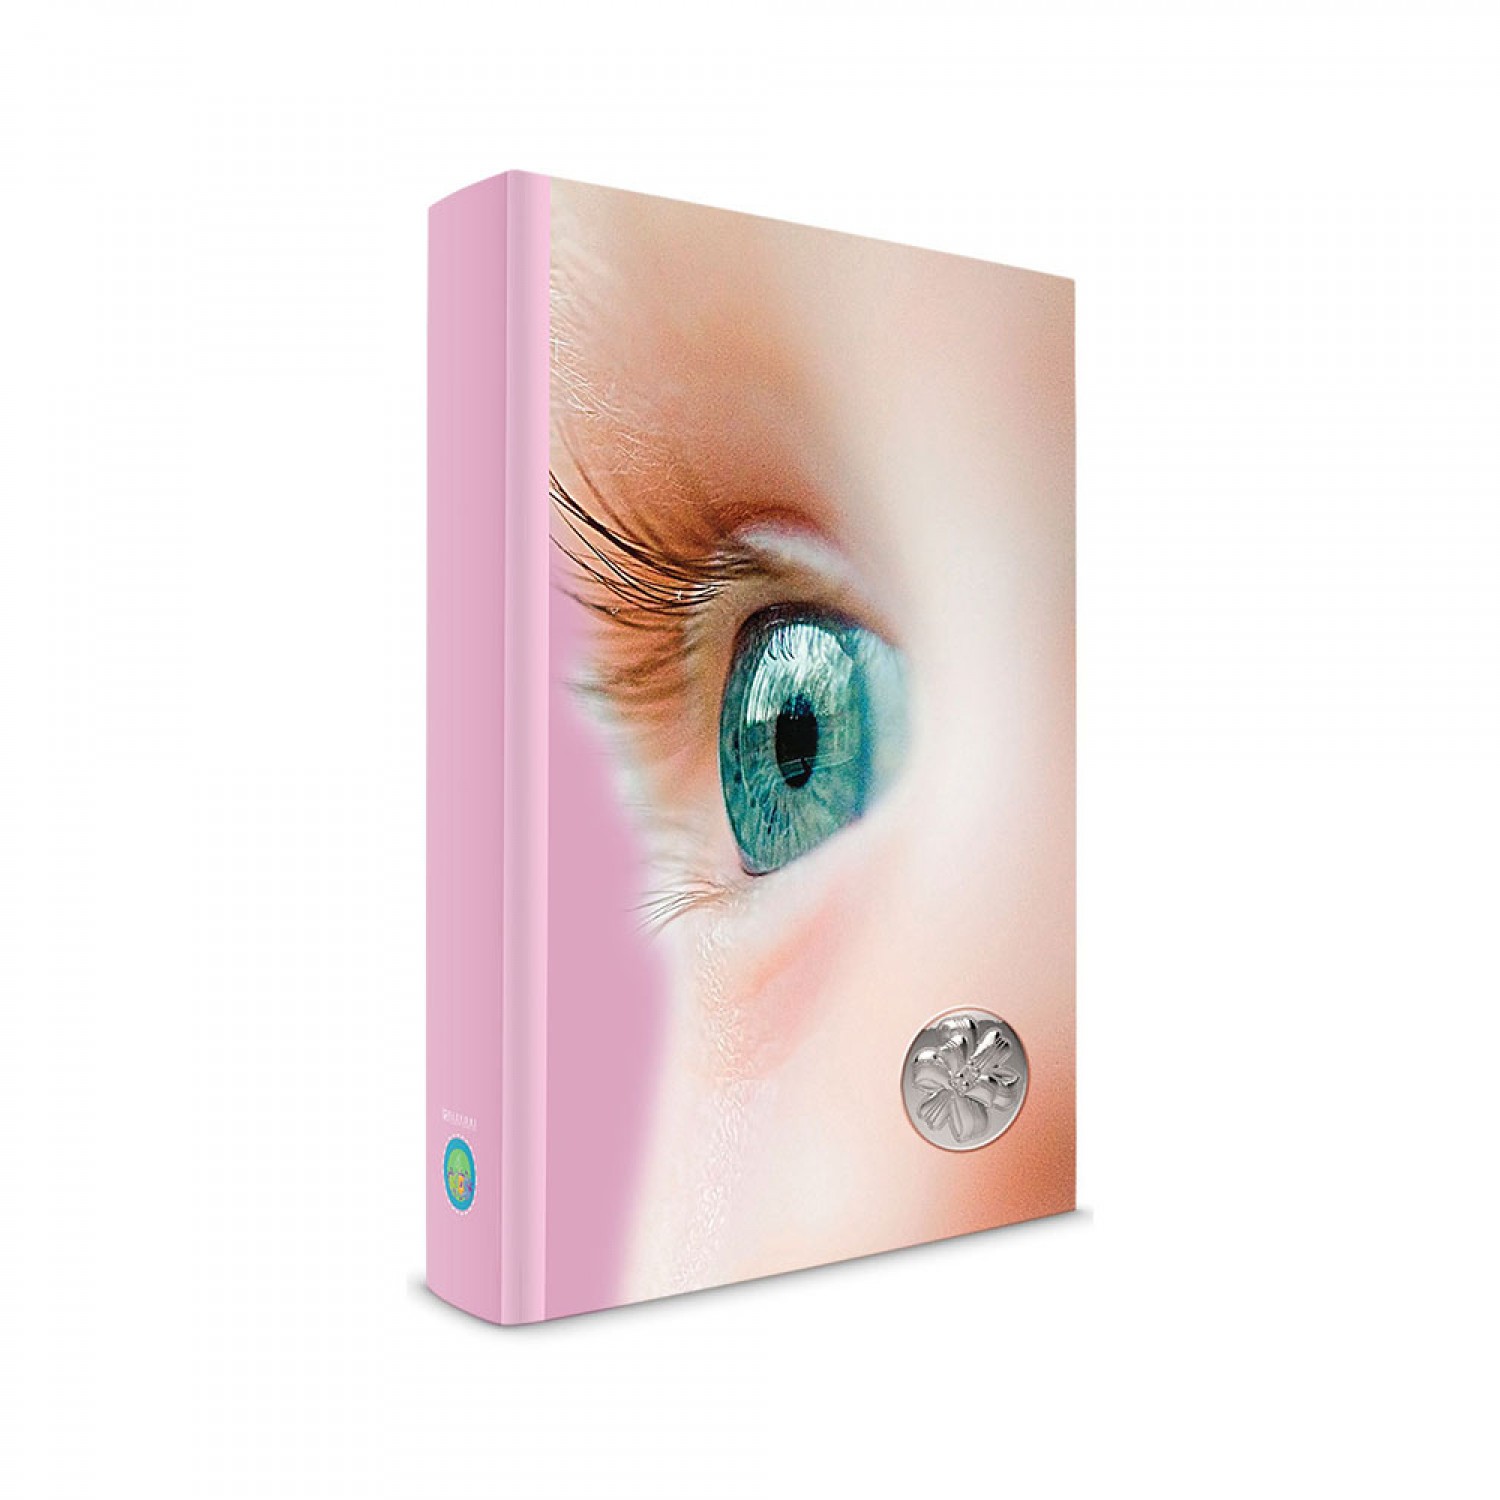 Παιδικό άλμπουμ για κοριτσάκι με μάτι και φιογκάκι 20Χ25.